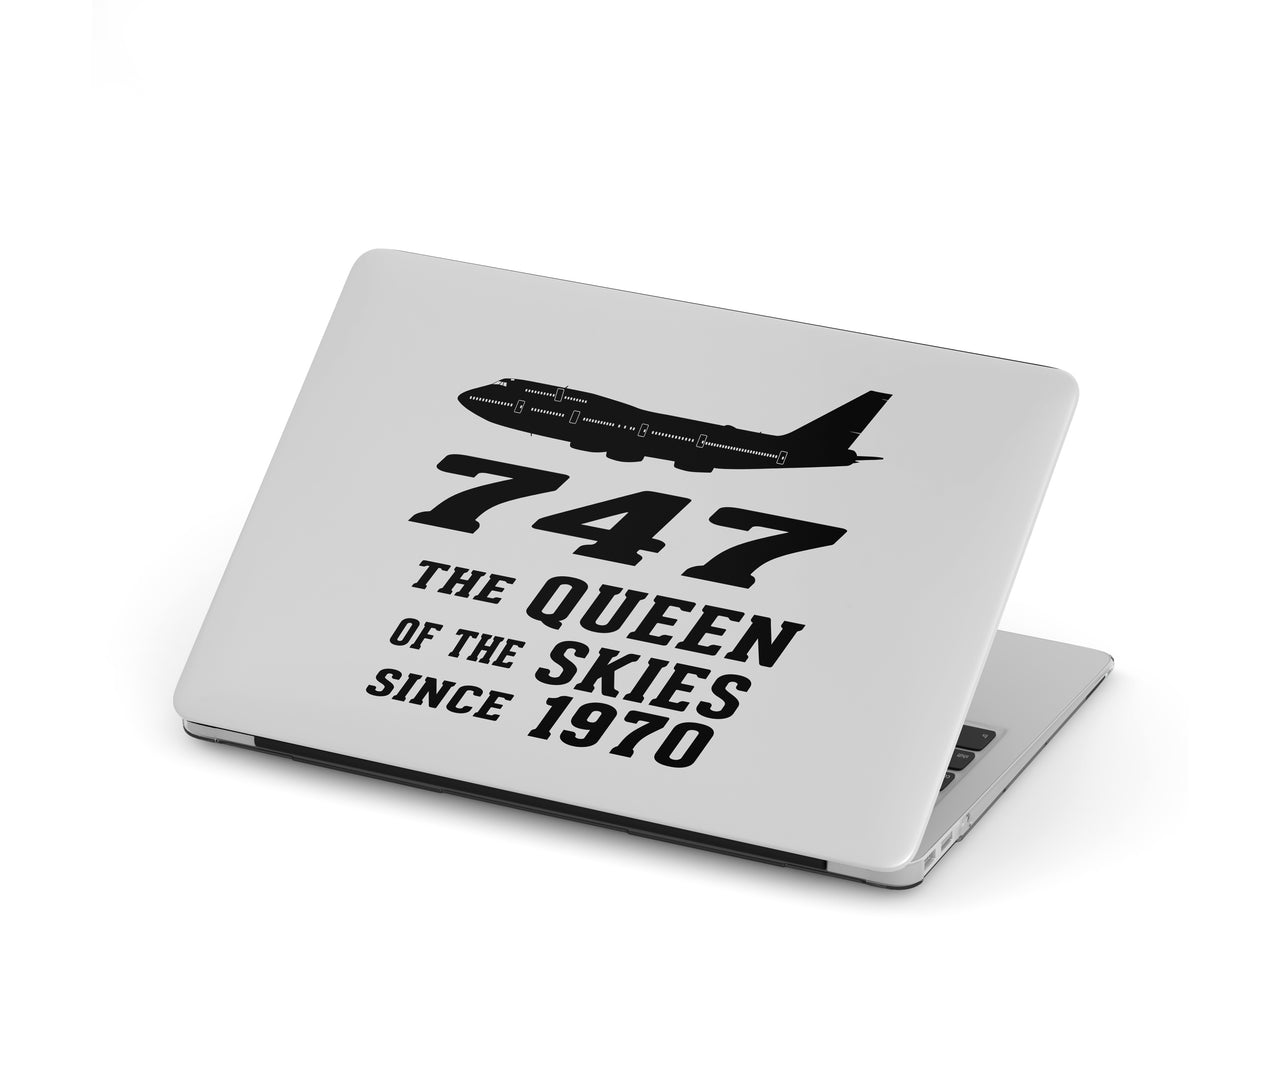 Boeing 747 - Queen of the Skies (2) Designed Macbook Cases